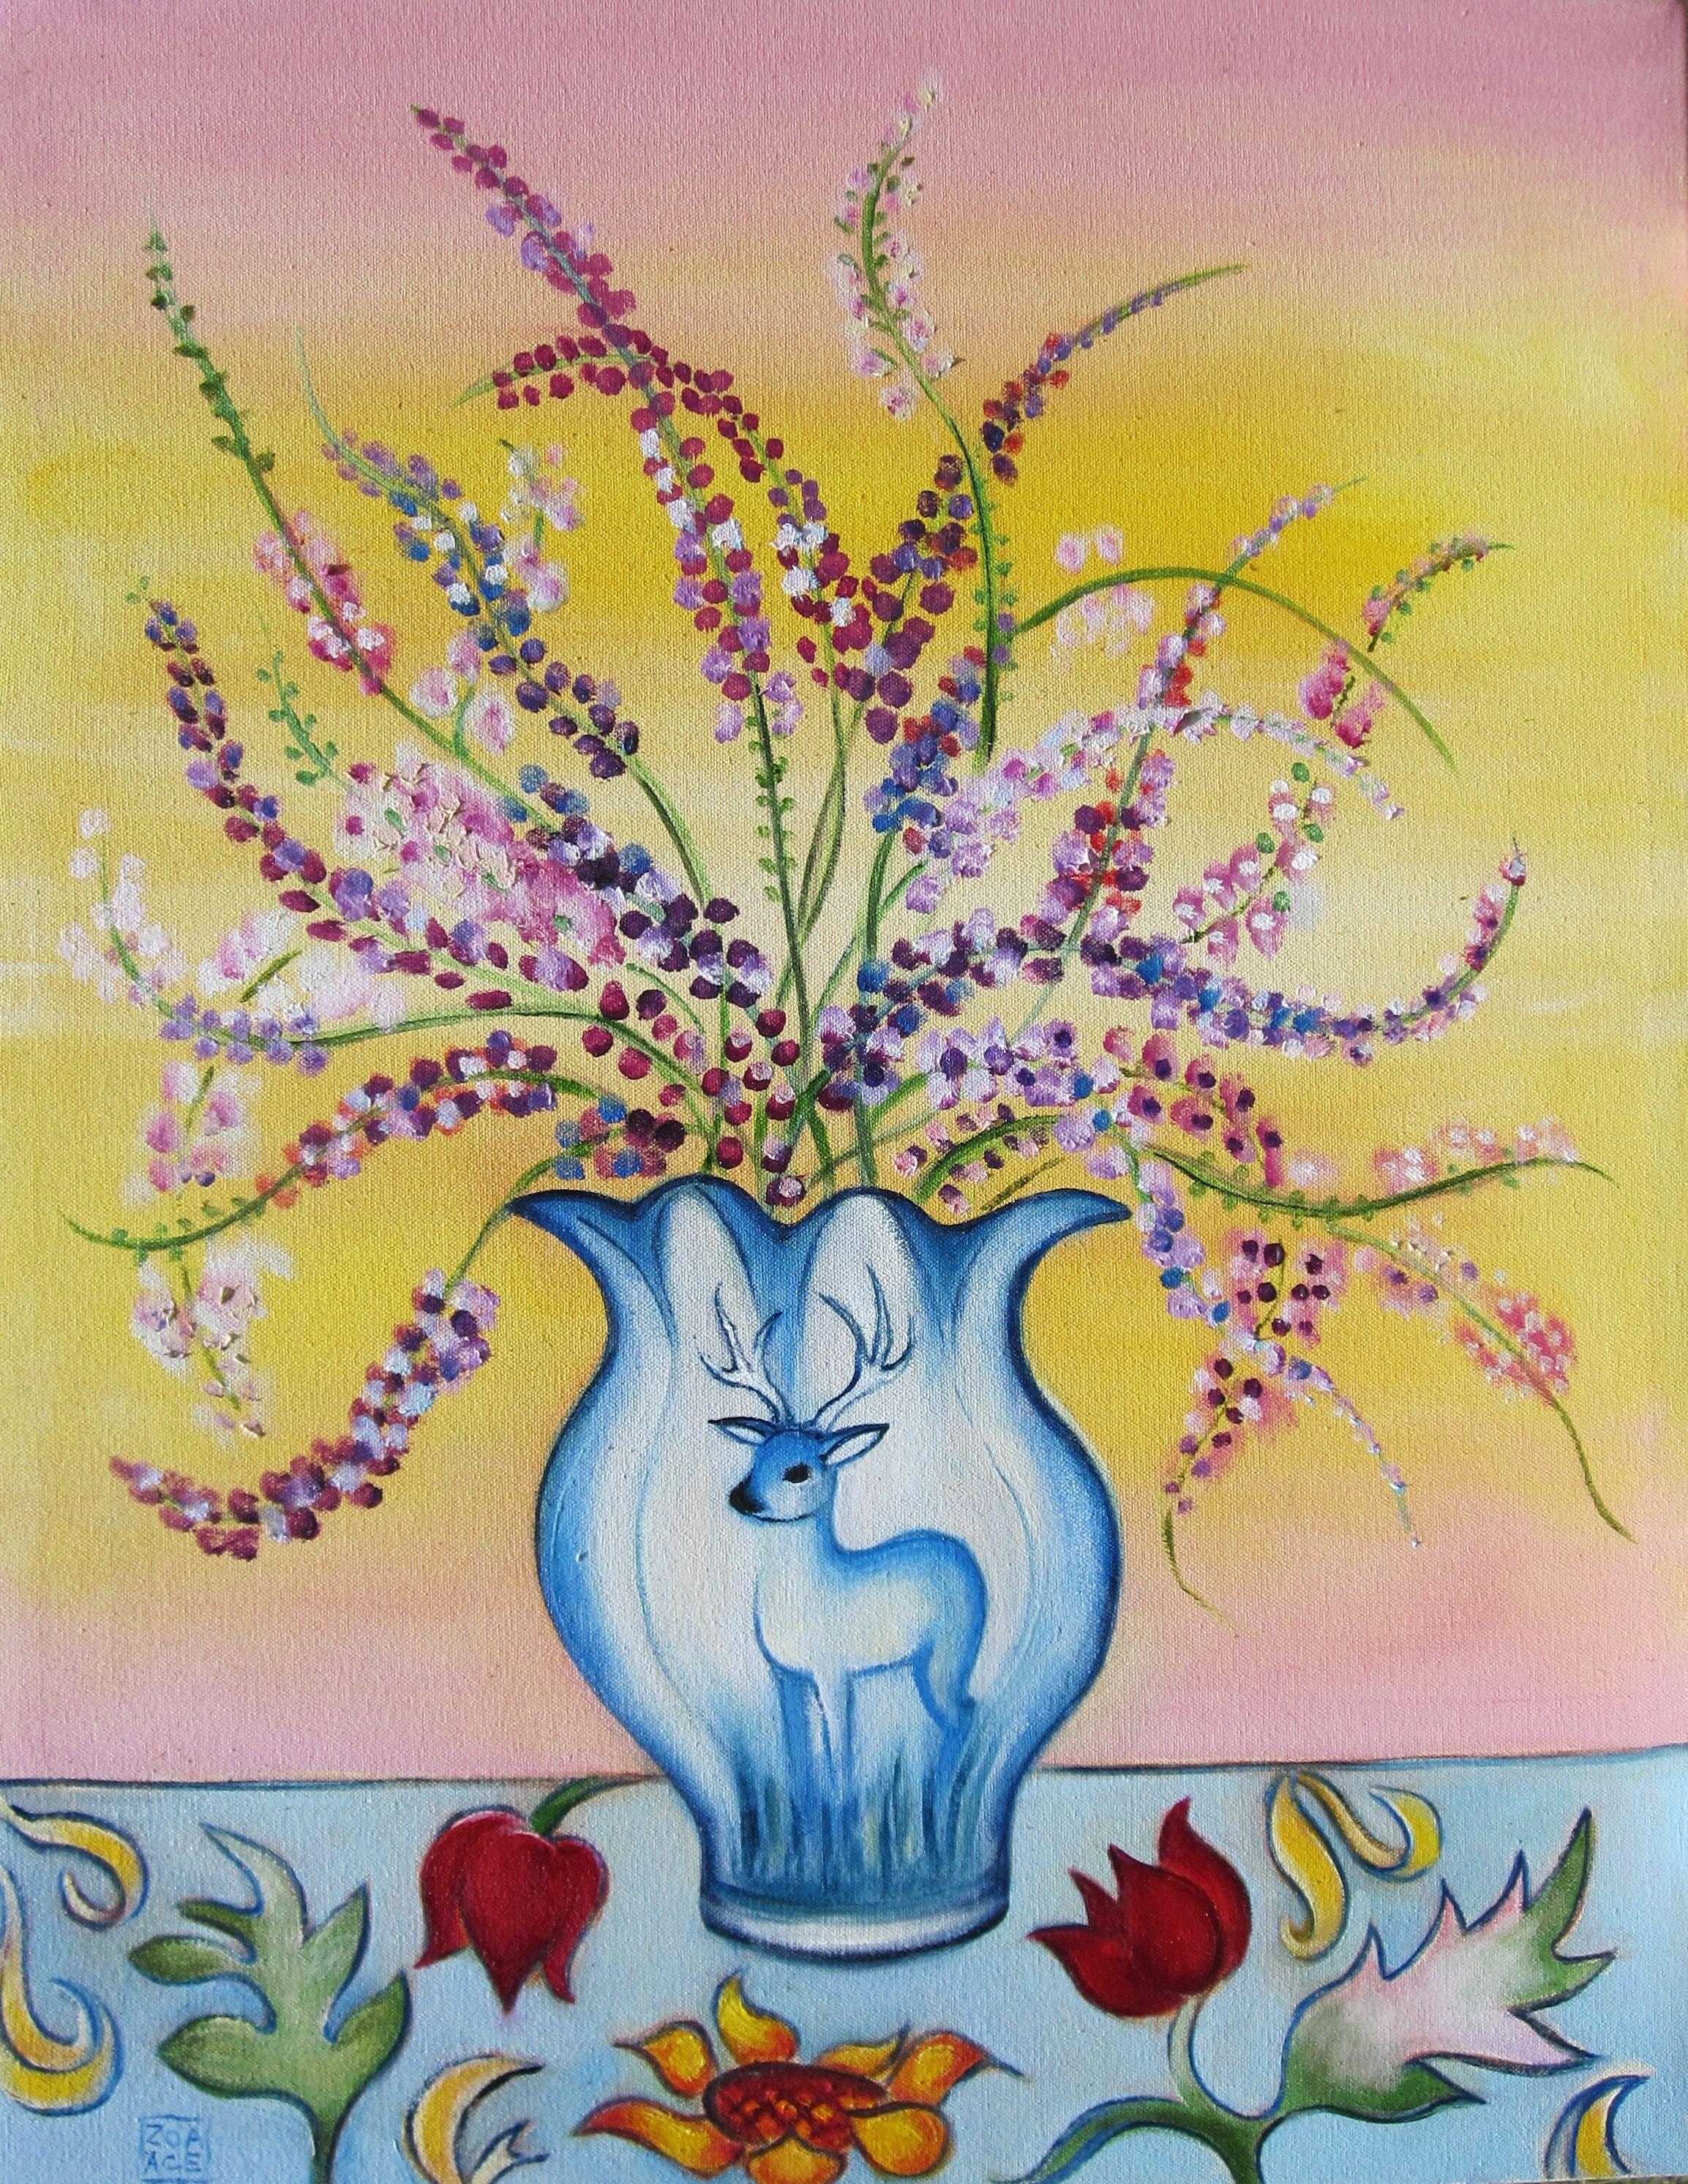 Animal Painting Zoa Ace - "Lavender in a Deer Vase" - Peinture à l'huile